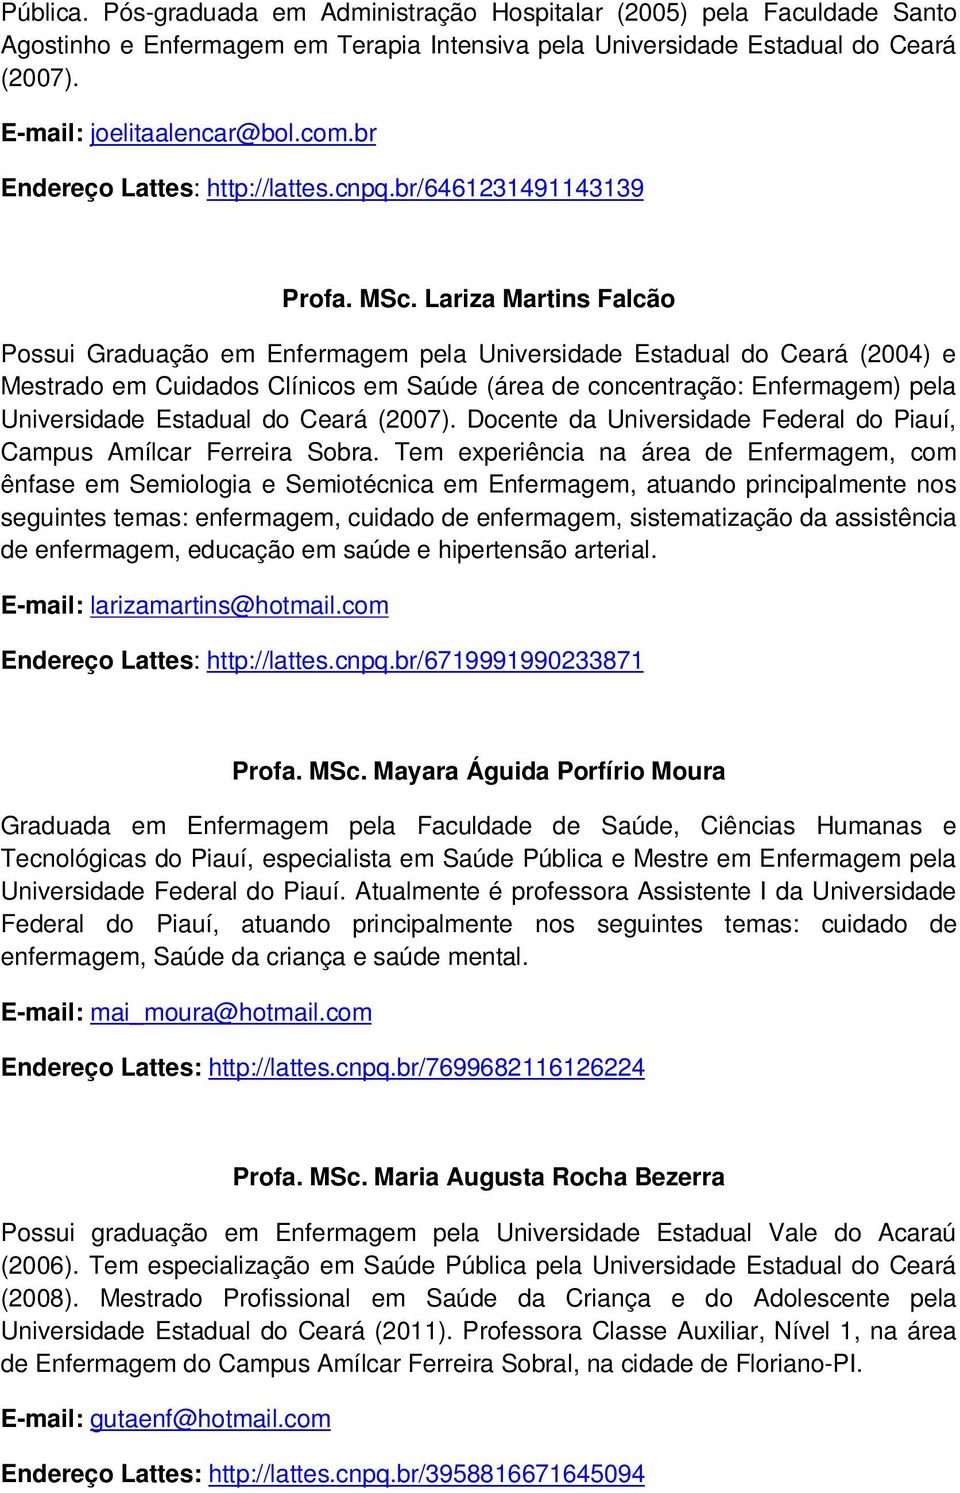 Lariza Martins Falcão Possui Graduação em Enfermagem pela Universidade Estadual do Ceará (2004) e Mestrado em Cuidados Clínicos em Saúde (área de concentração: Enfermagem) pela Universidade Estadual